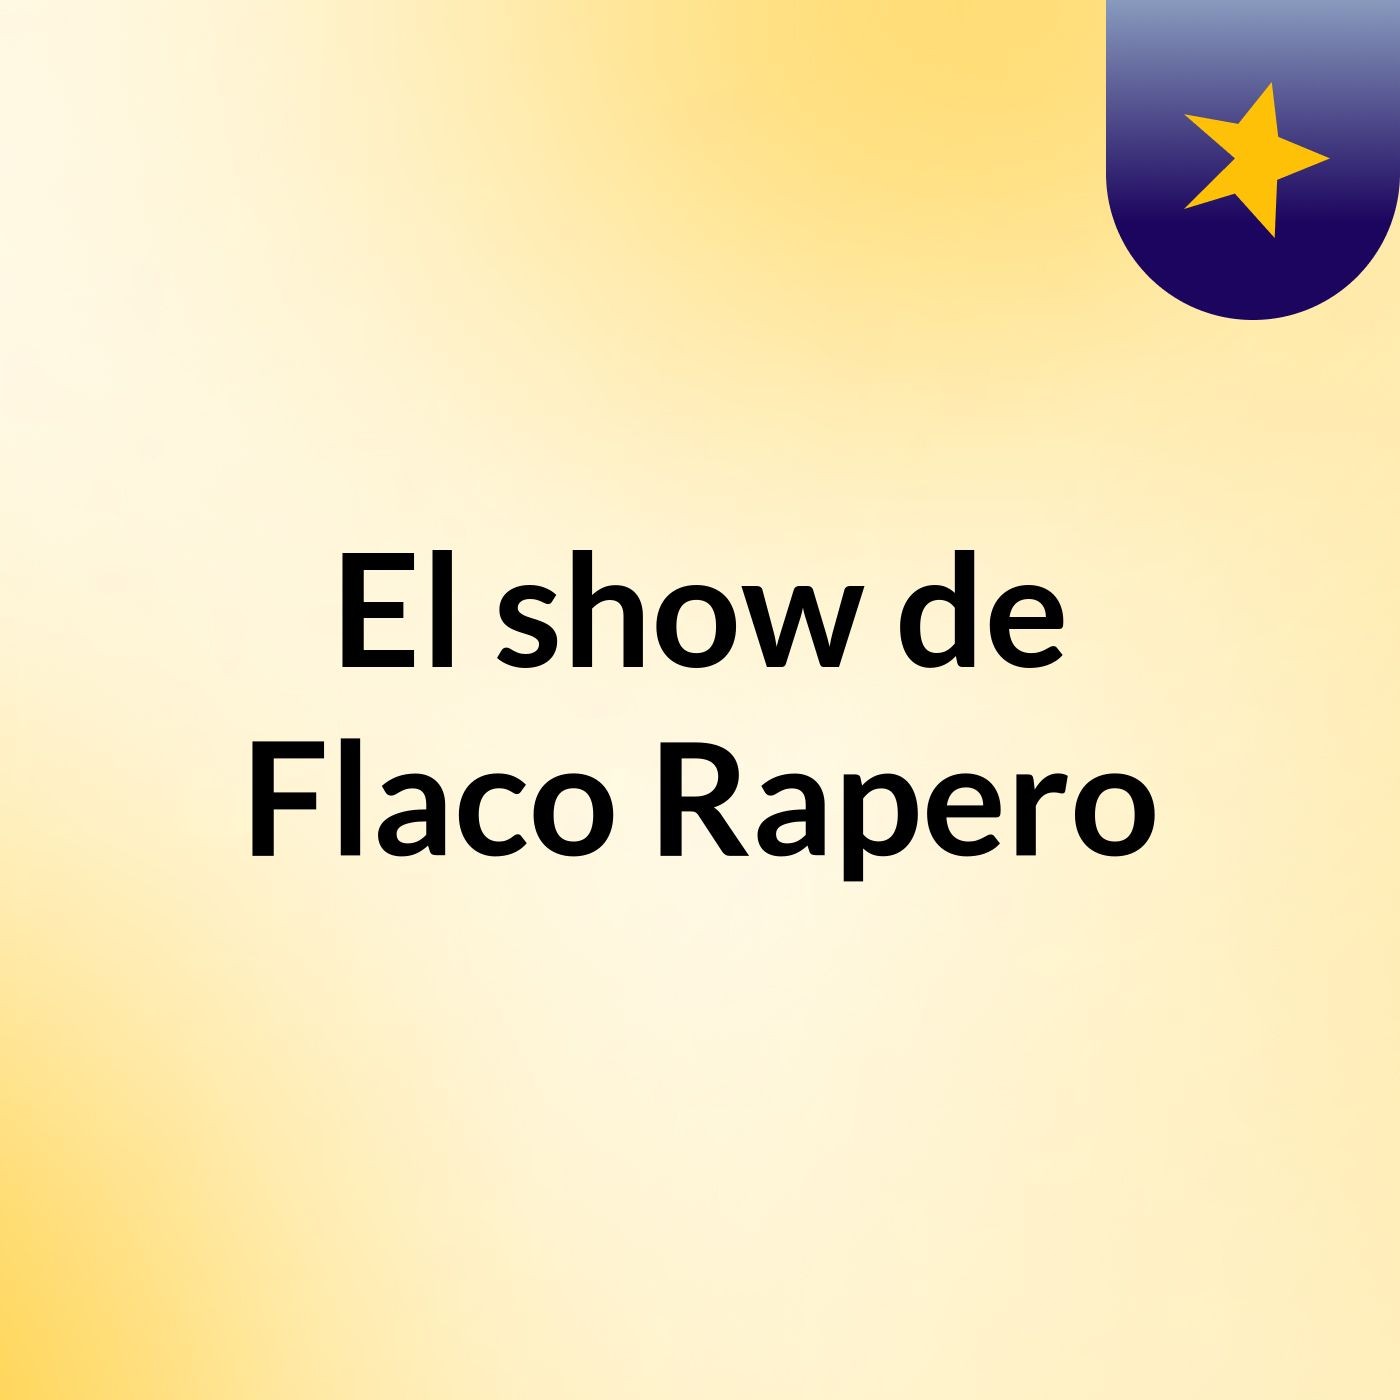 El show de Flaco Rapero